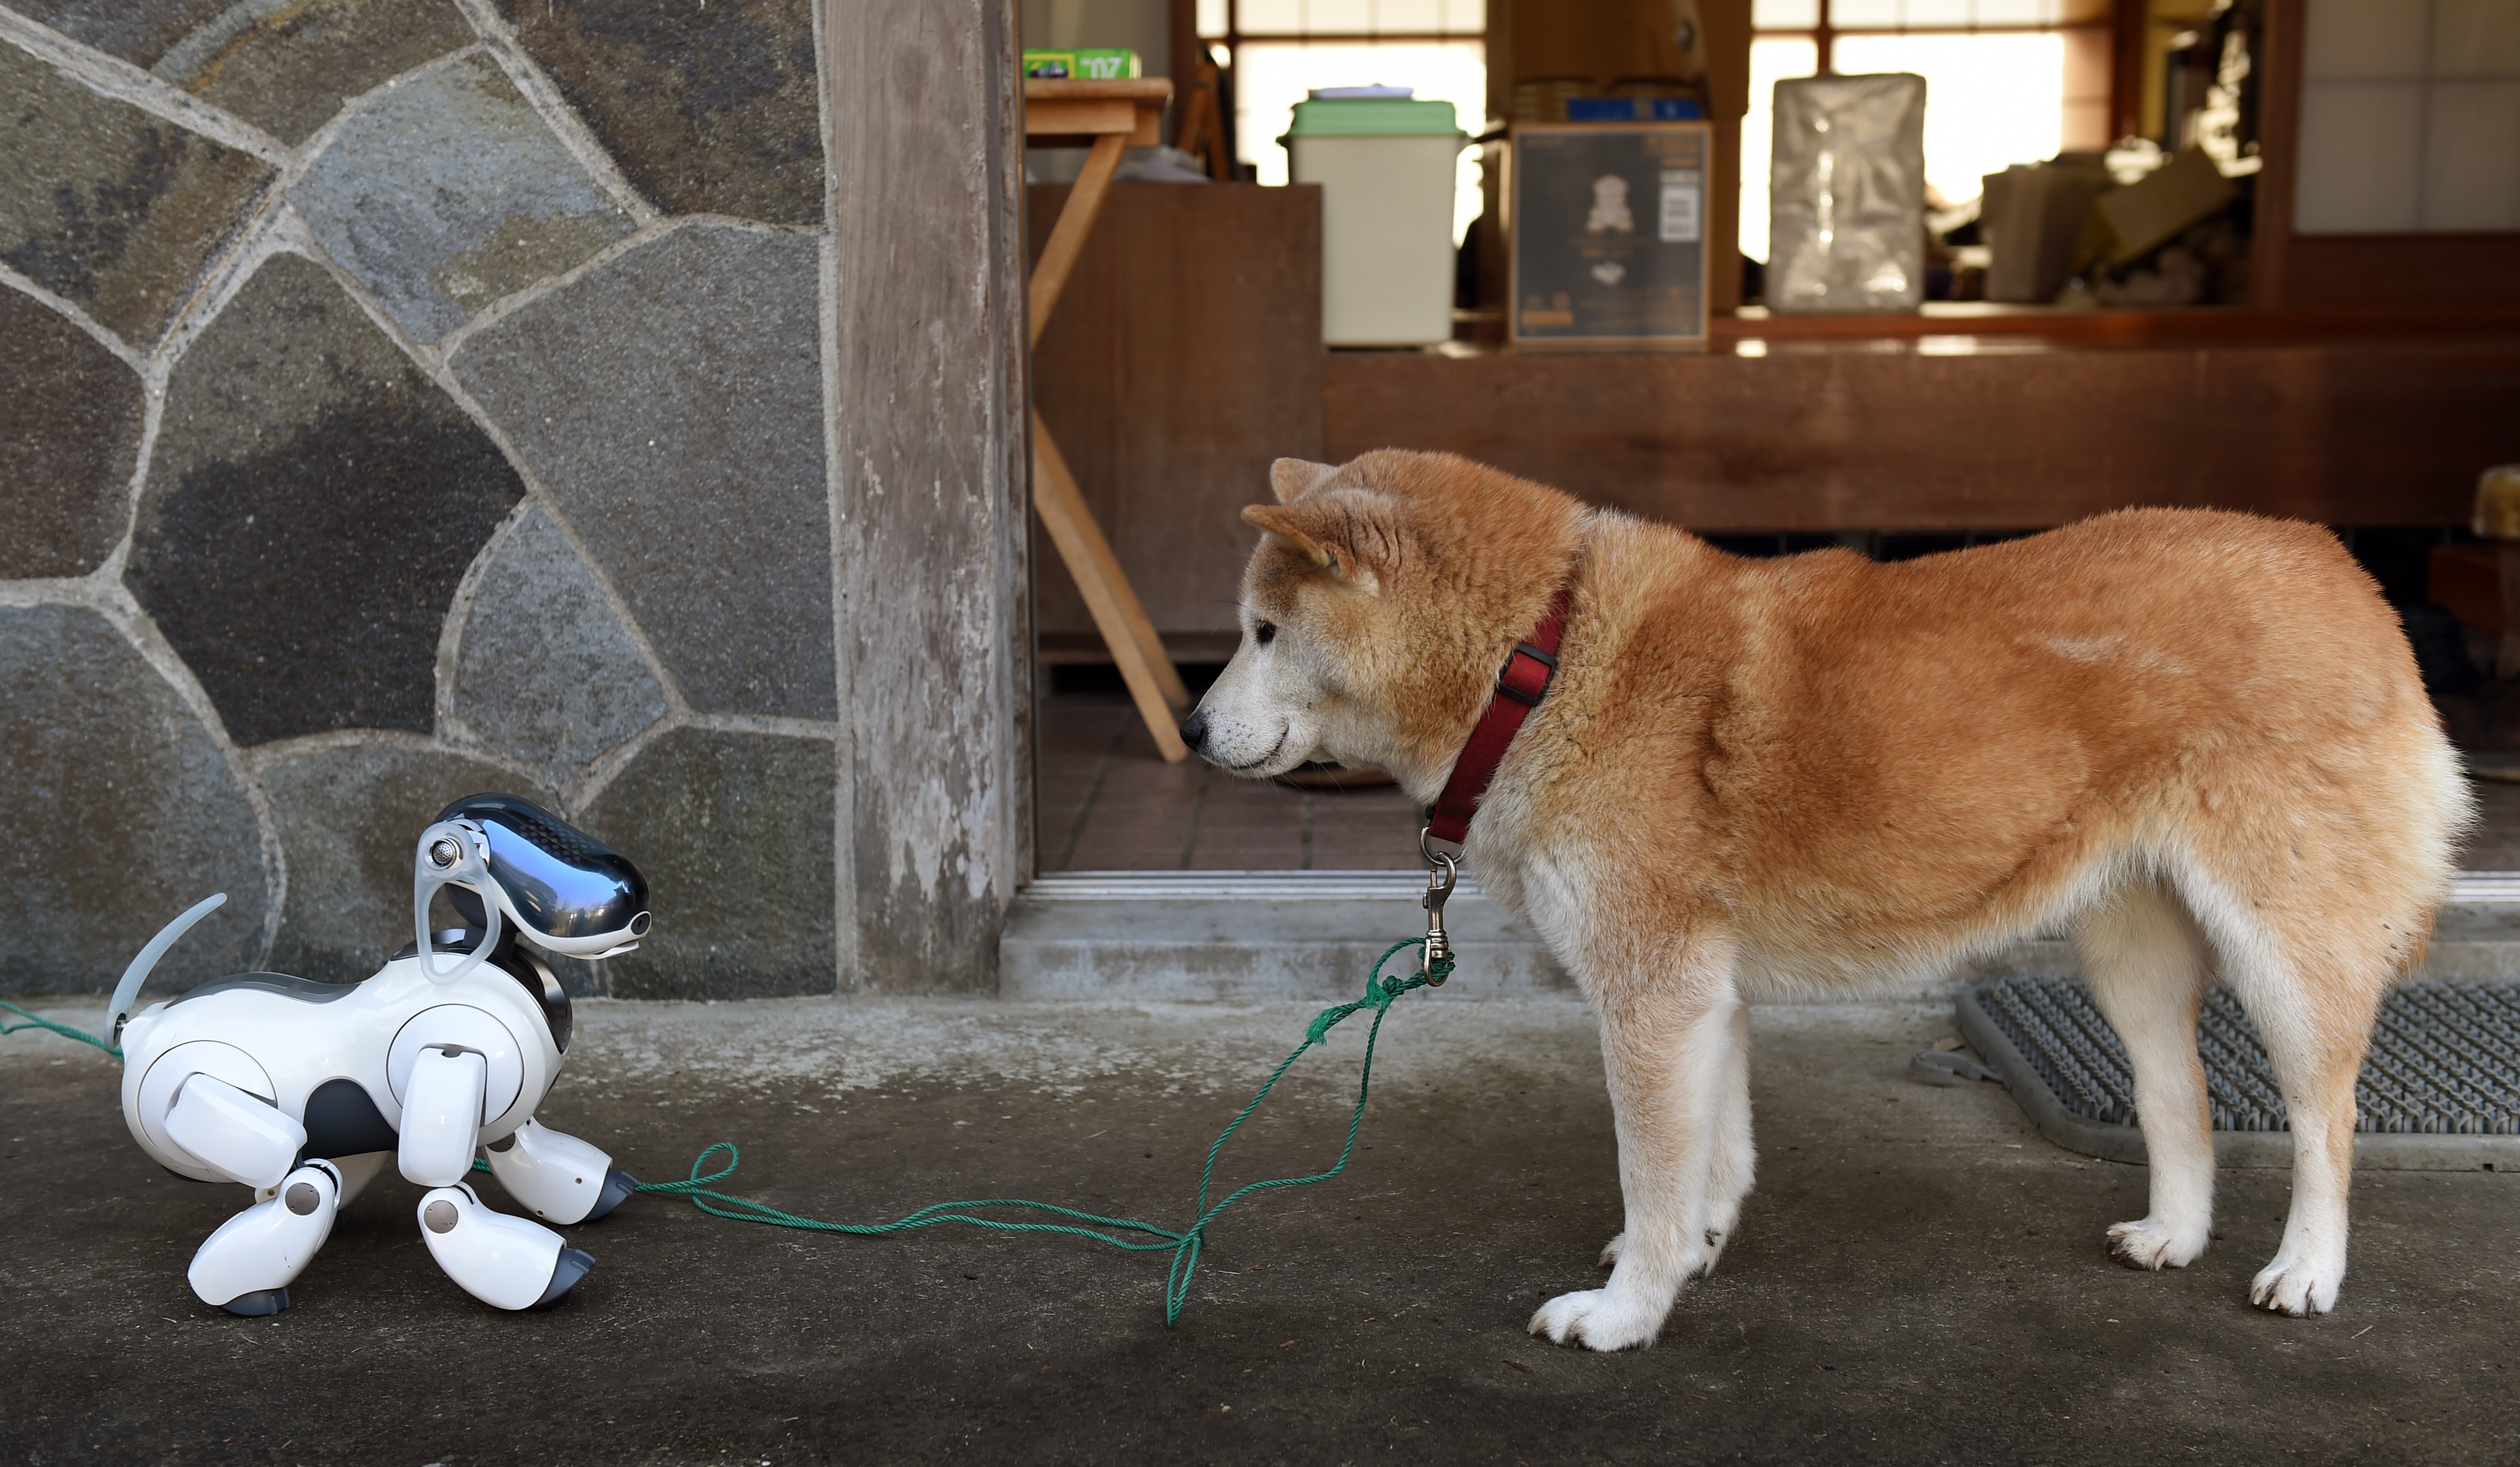 Magyar kutatók: Kutyákról érdemes mintázni a robotokat